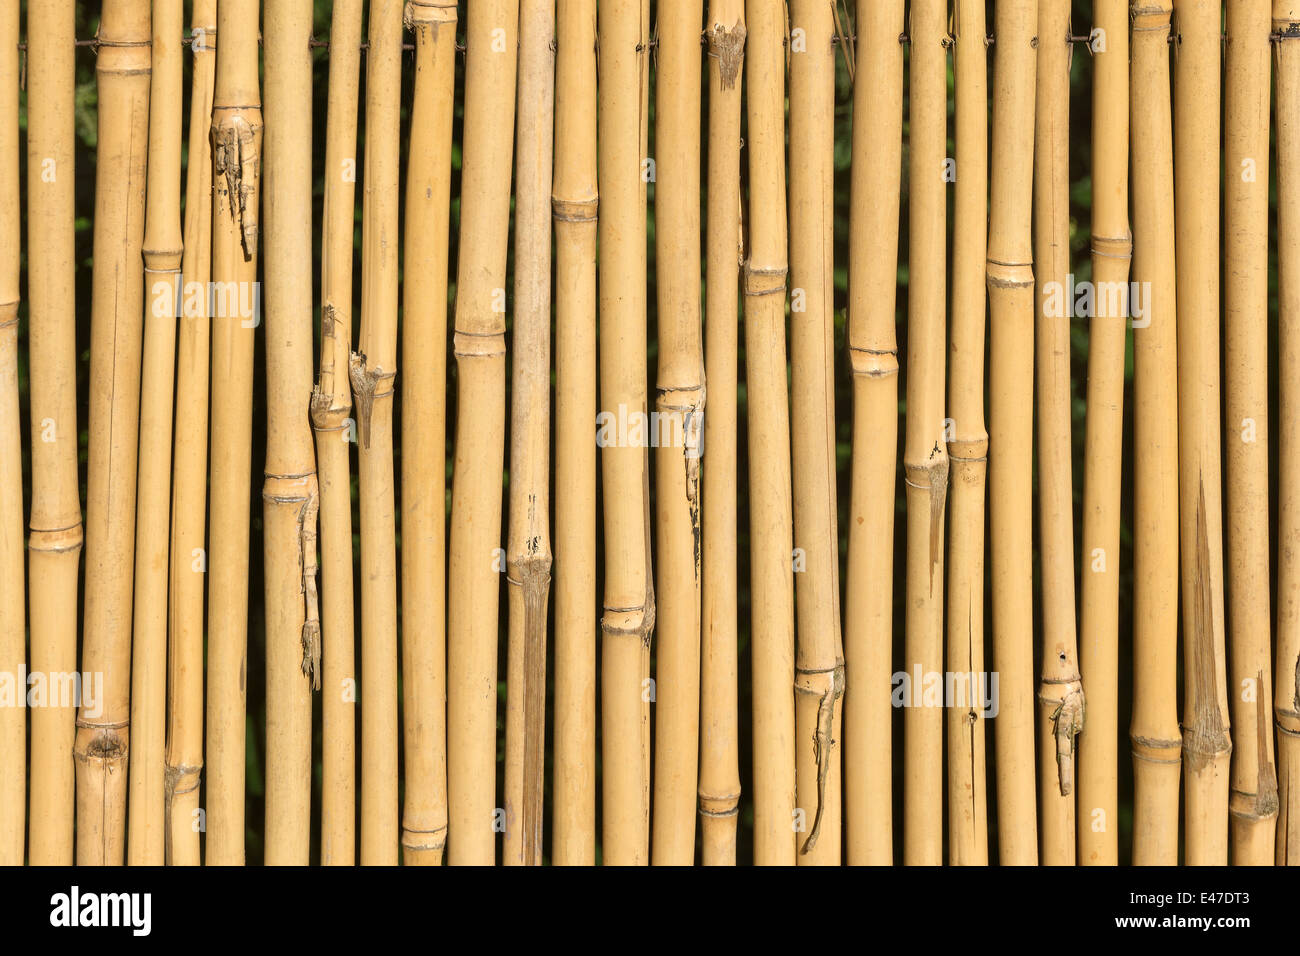 Canna di bambù immagini e fotografie stock ad alta risoluzione - Alamy